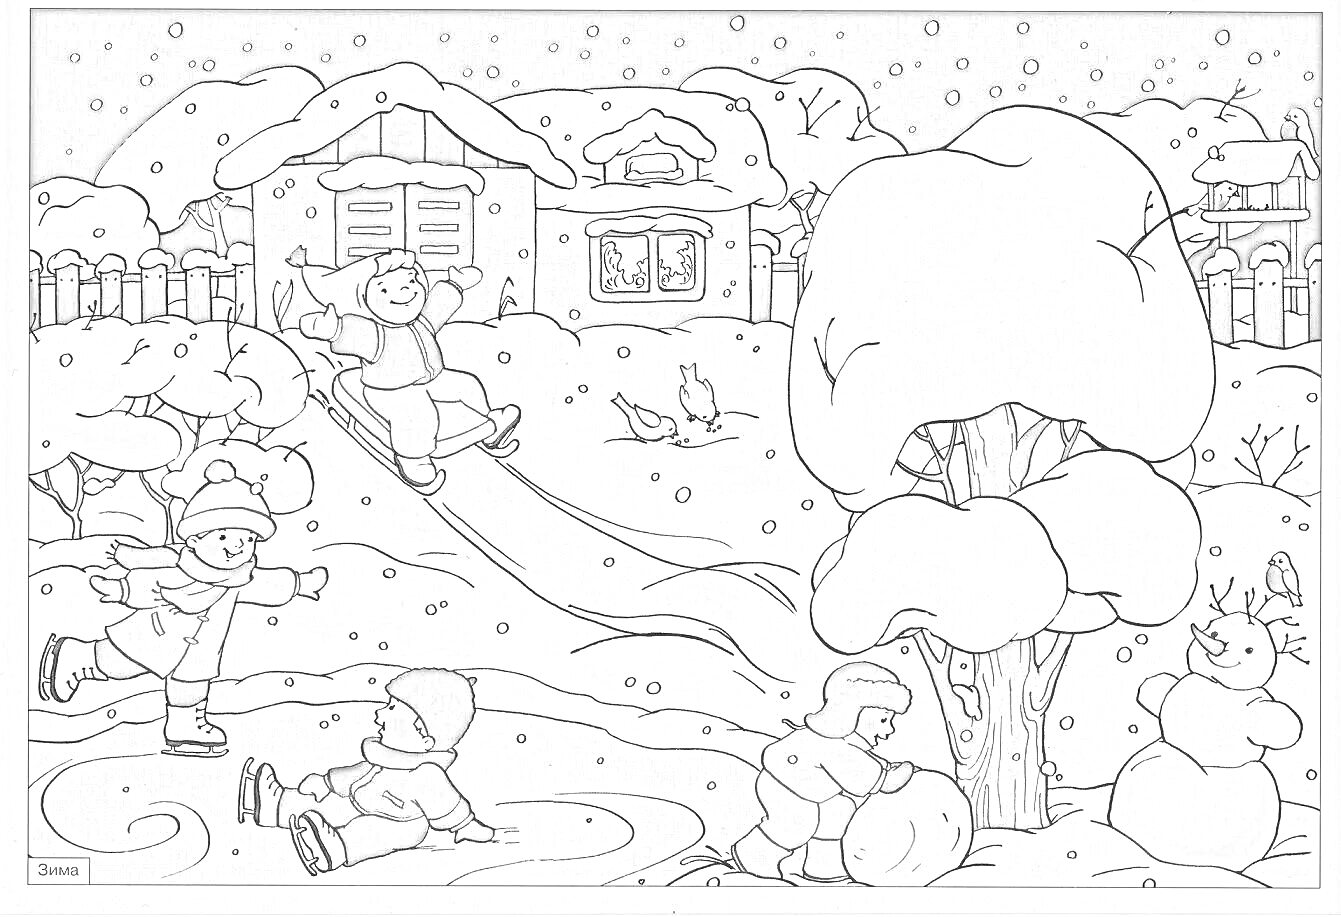 Раскраска Зимняя забава детей во дворе: катание с горки, катание на коньках, лепка снеговика, заснеженные домики, деревья и сугробы вокруг.